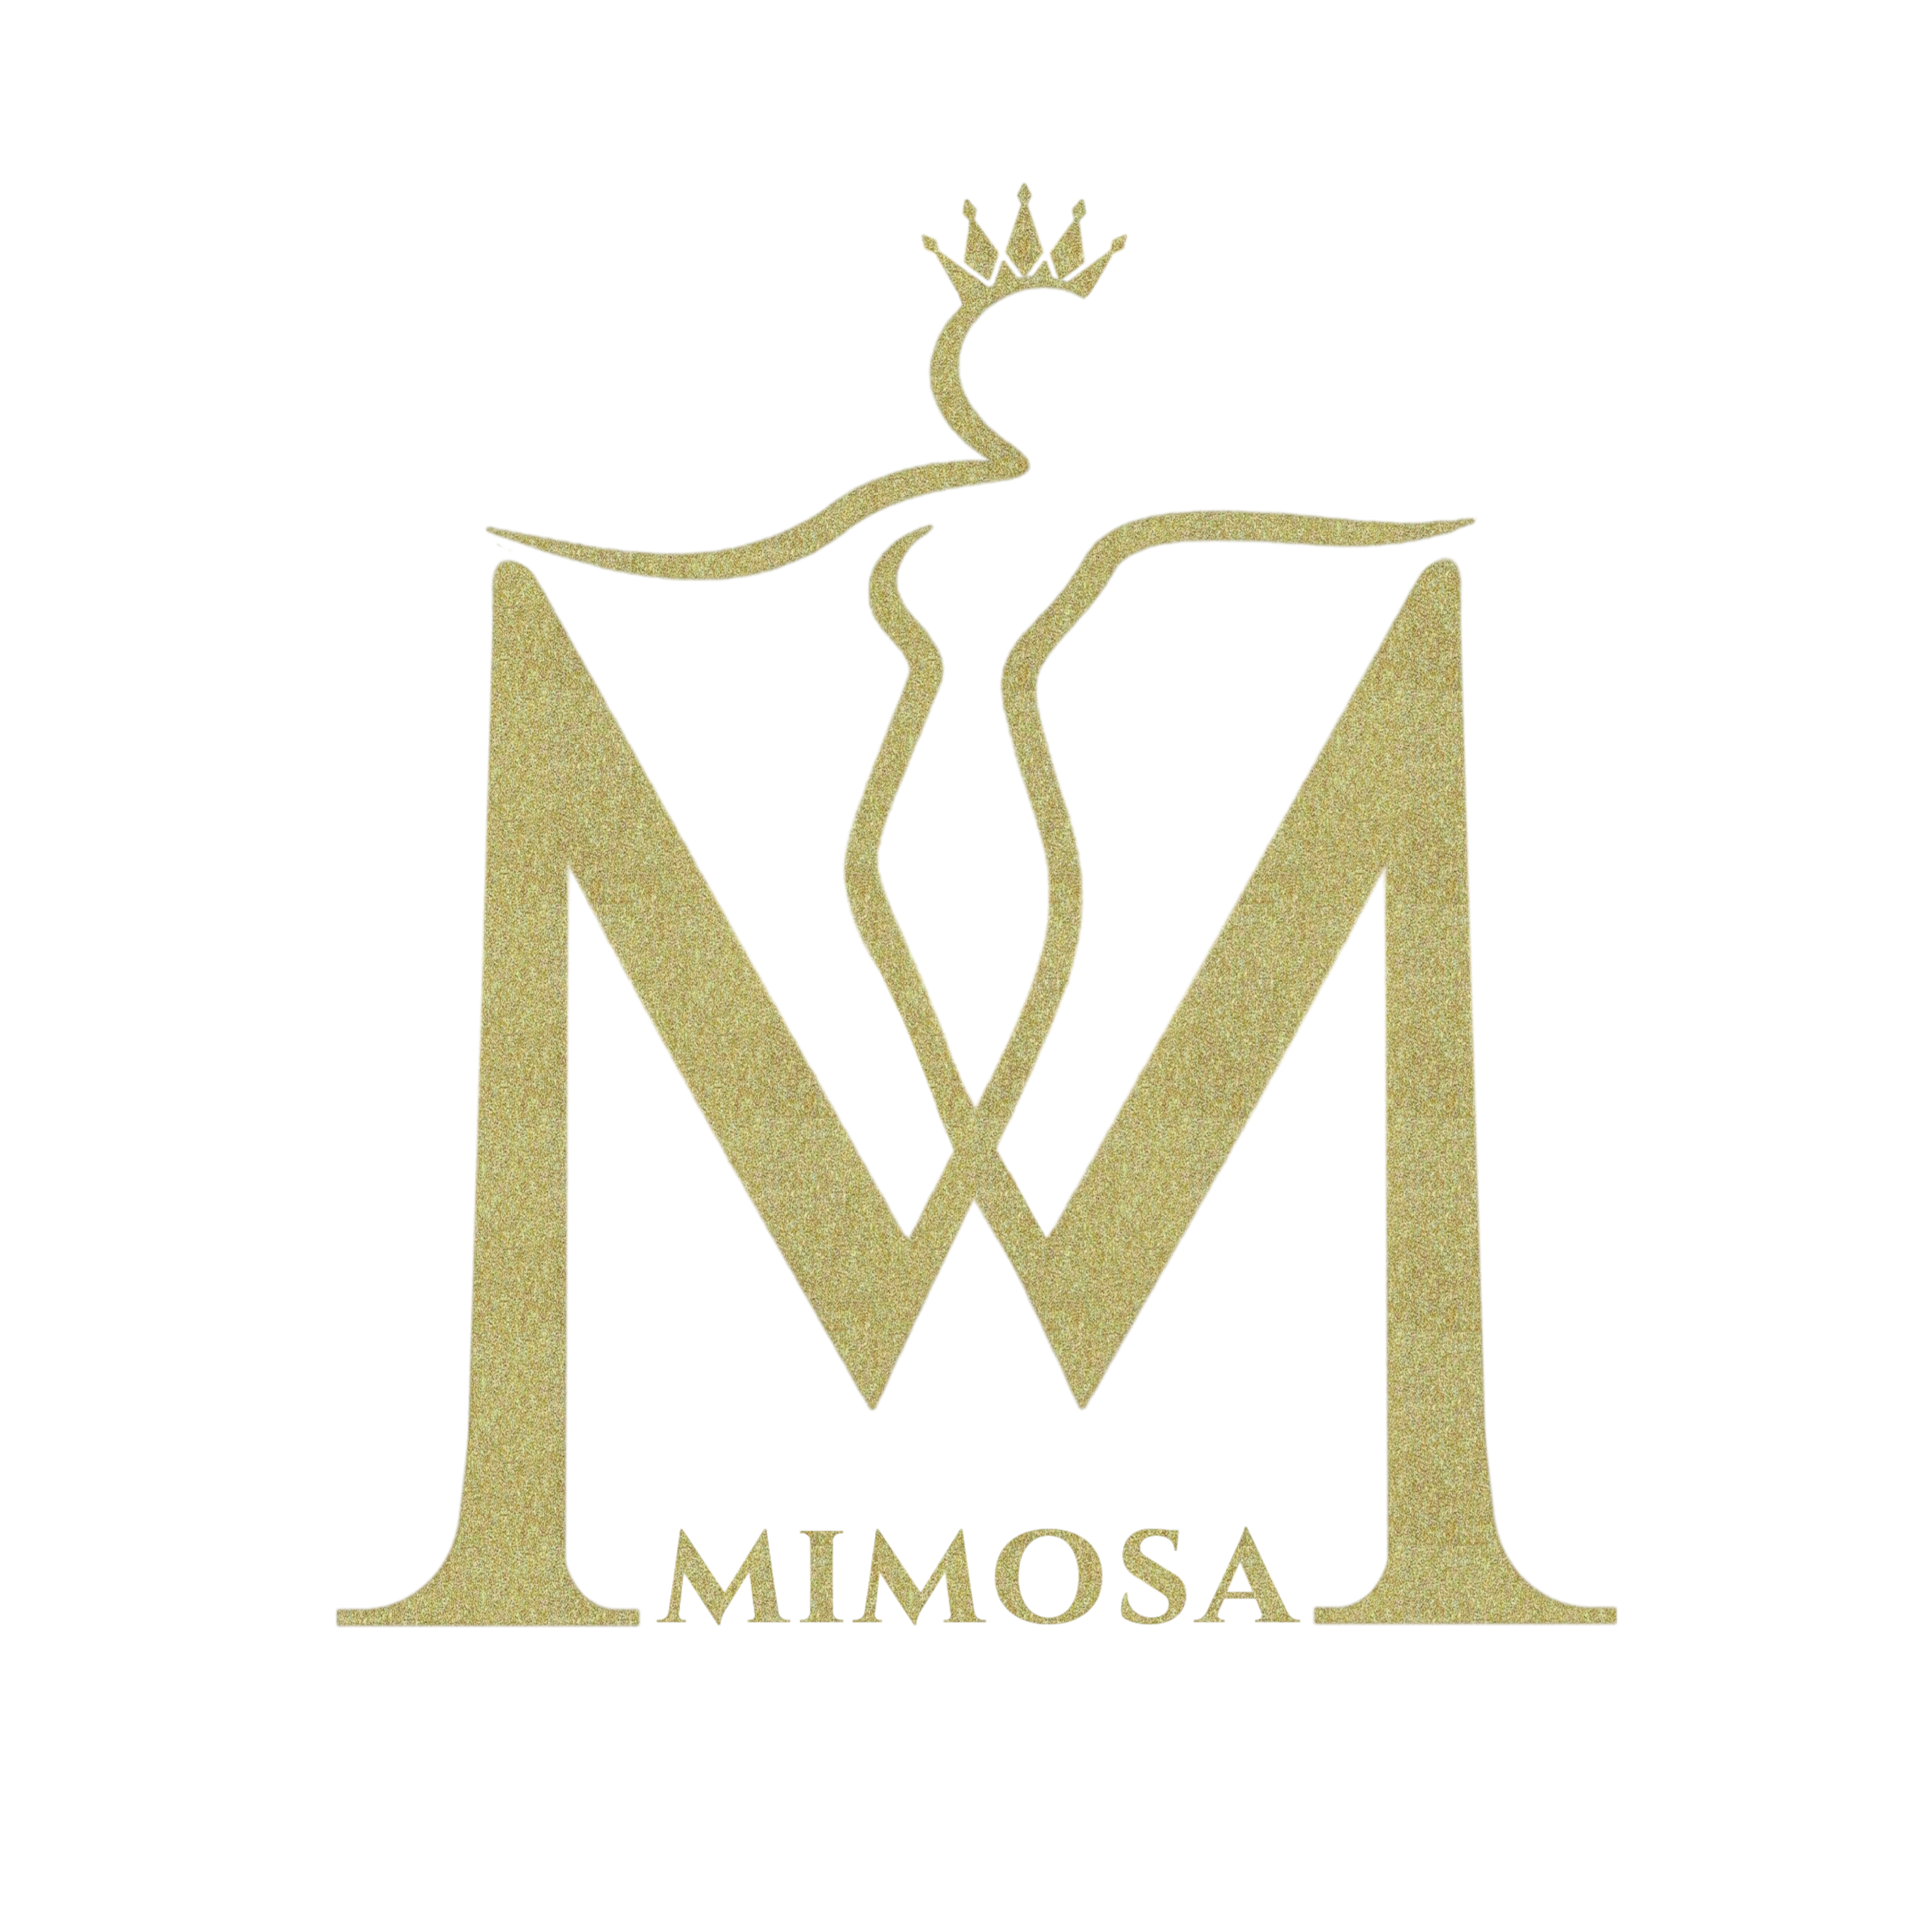 میموسا | mimosa